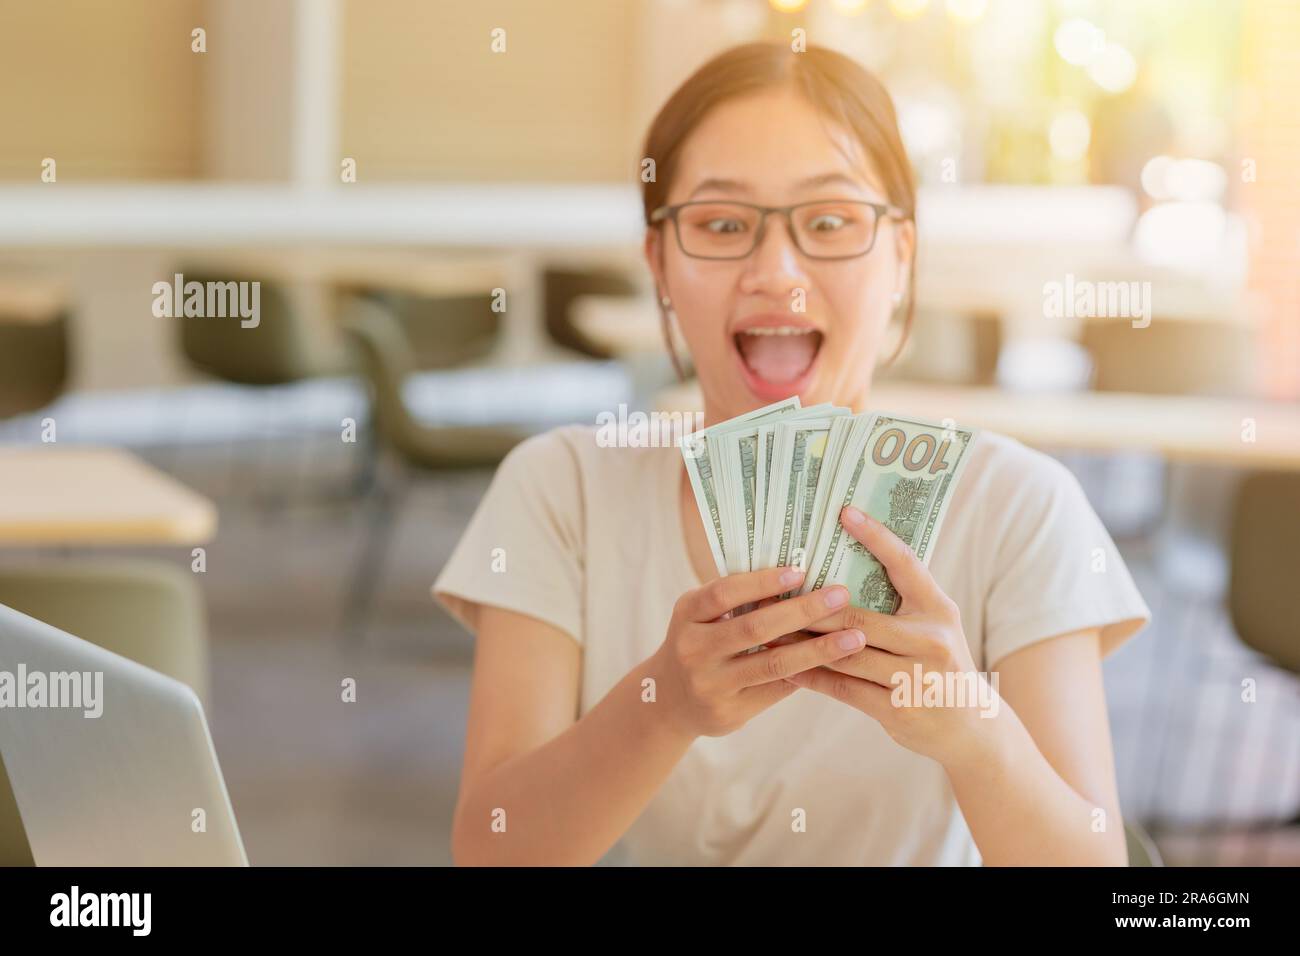 Junge Studentin an der Universität, die gerne viel Bargeld für Teilzeitarbeit im Internet verdient. Stockfoto